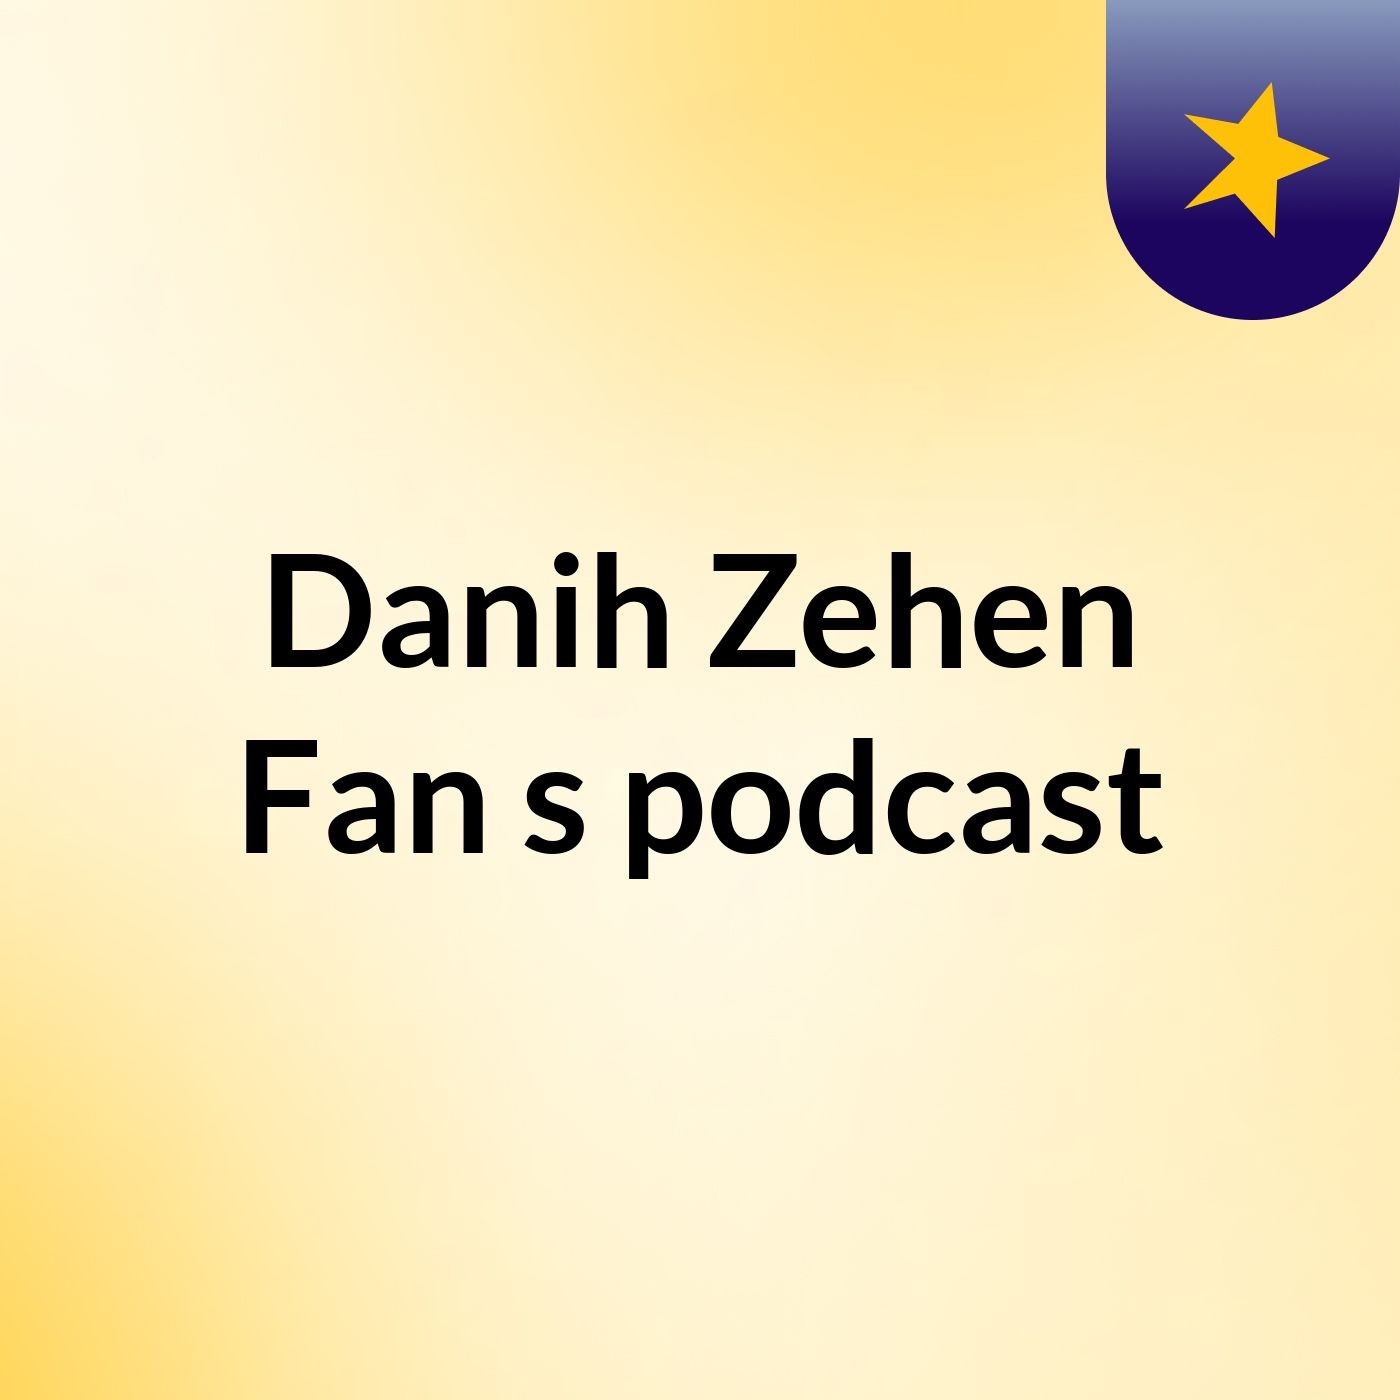 Episode 3 - Danih Zehen Fan's podcast